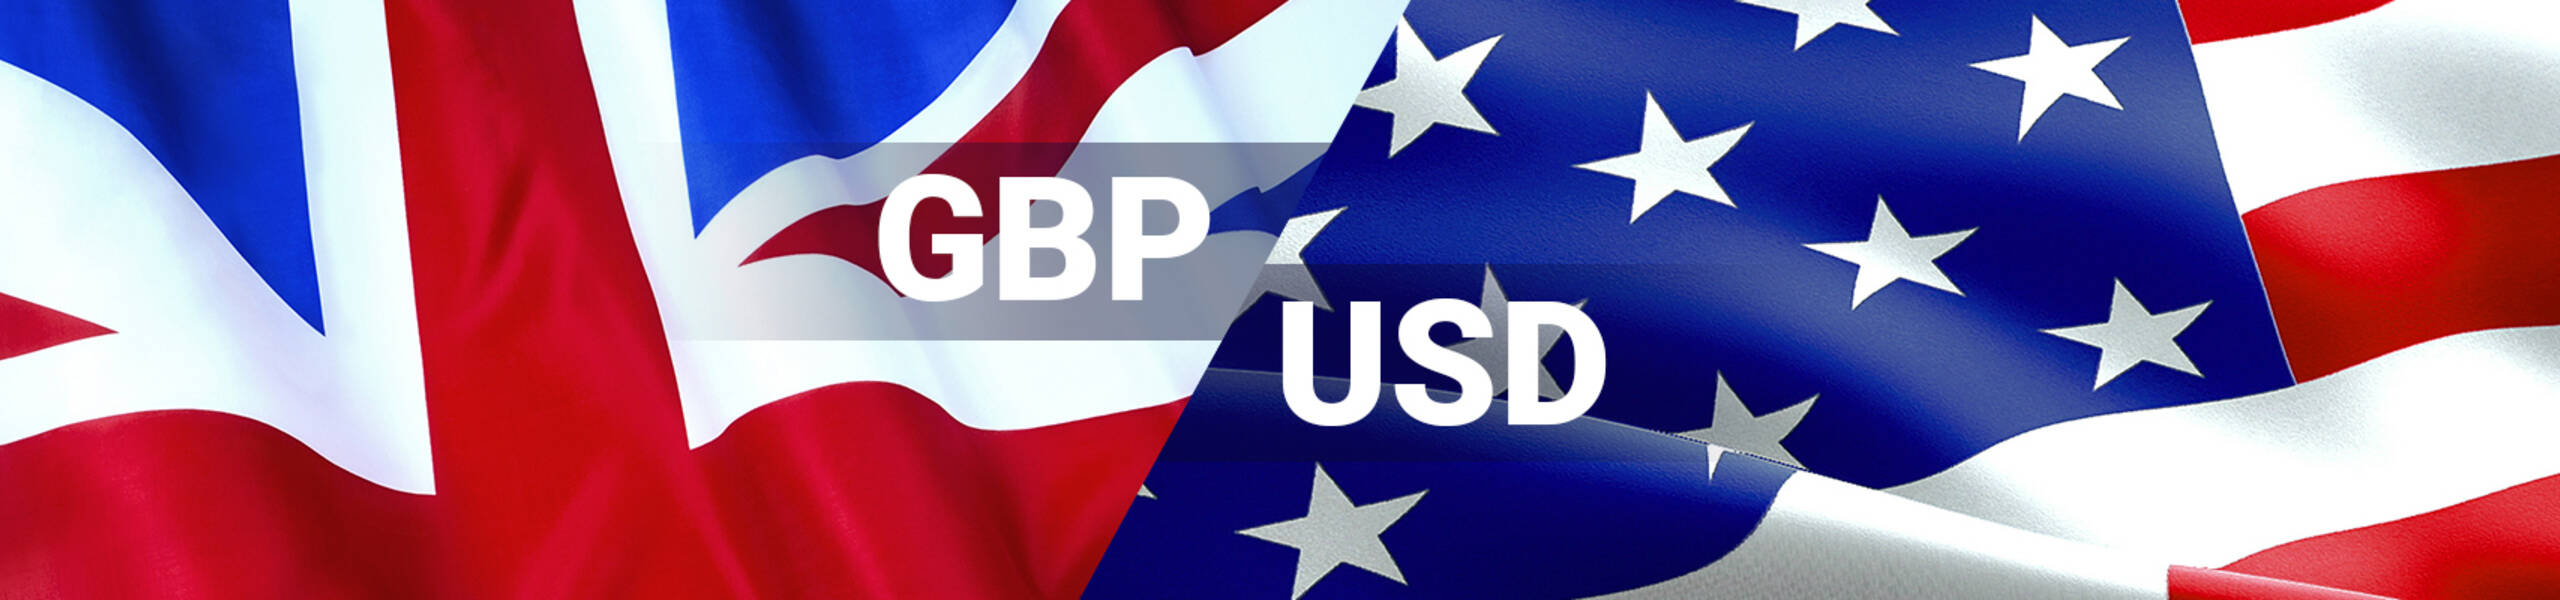 GBP/USD Previsión Semanal octubre 8 al 12.